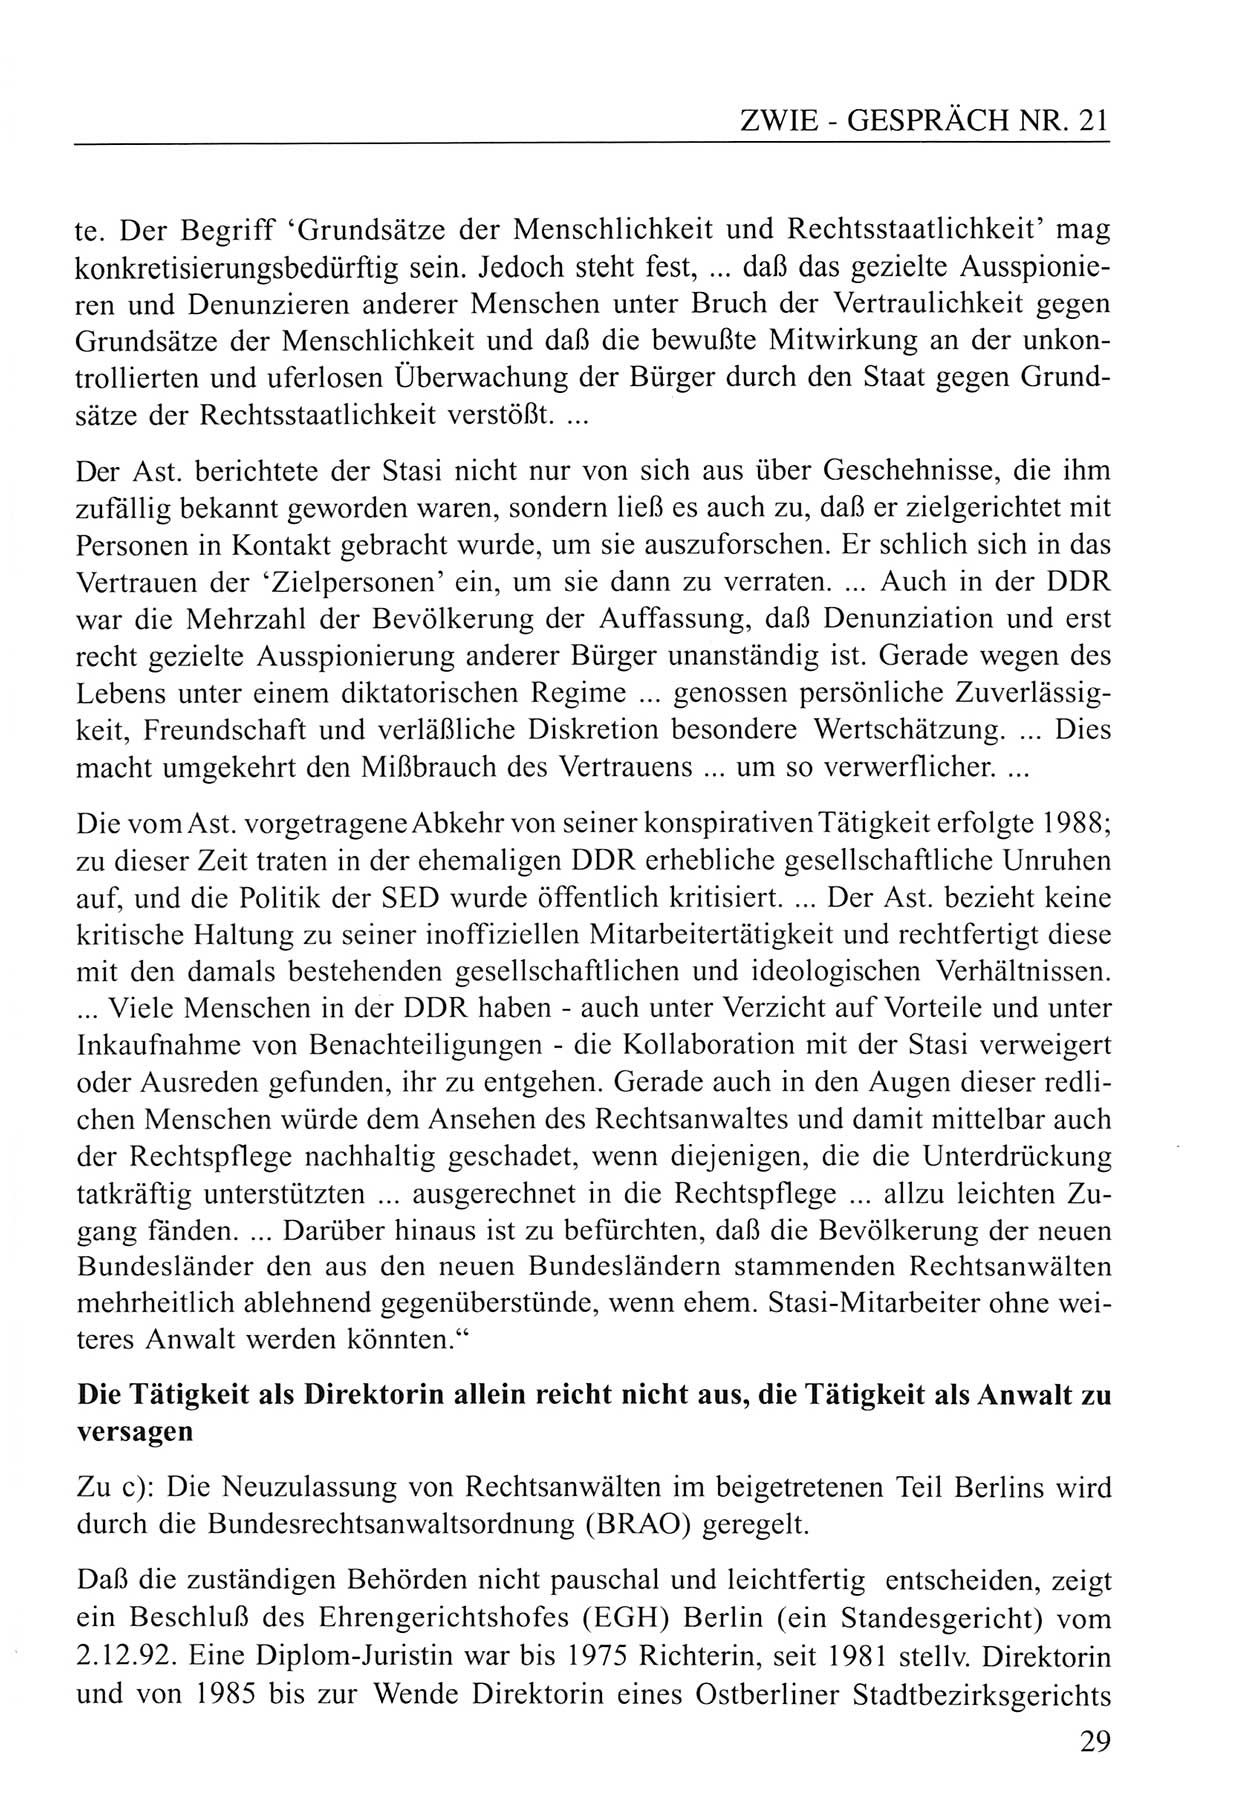 Zwie-Gespräch, Beiträge zum Umgang mit der Staatssicherheits-Vergangenheit [Deutsche Demokratische Republik (DDR)], Ausgabe Nr. 21, Berlin 1994, Seite 29 (Zwie-Gespr. Ausg. 21 1994, S. 29)